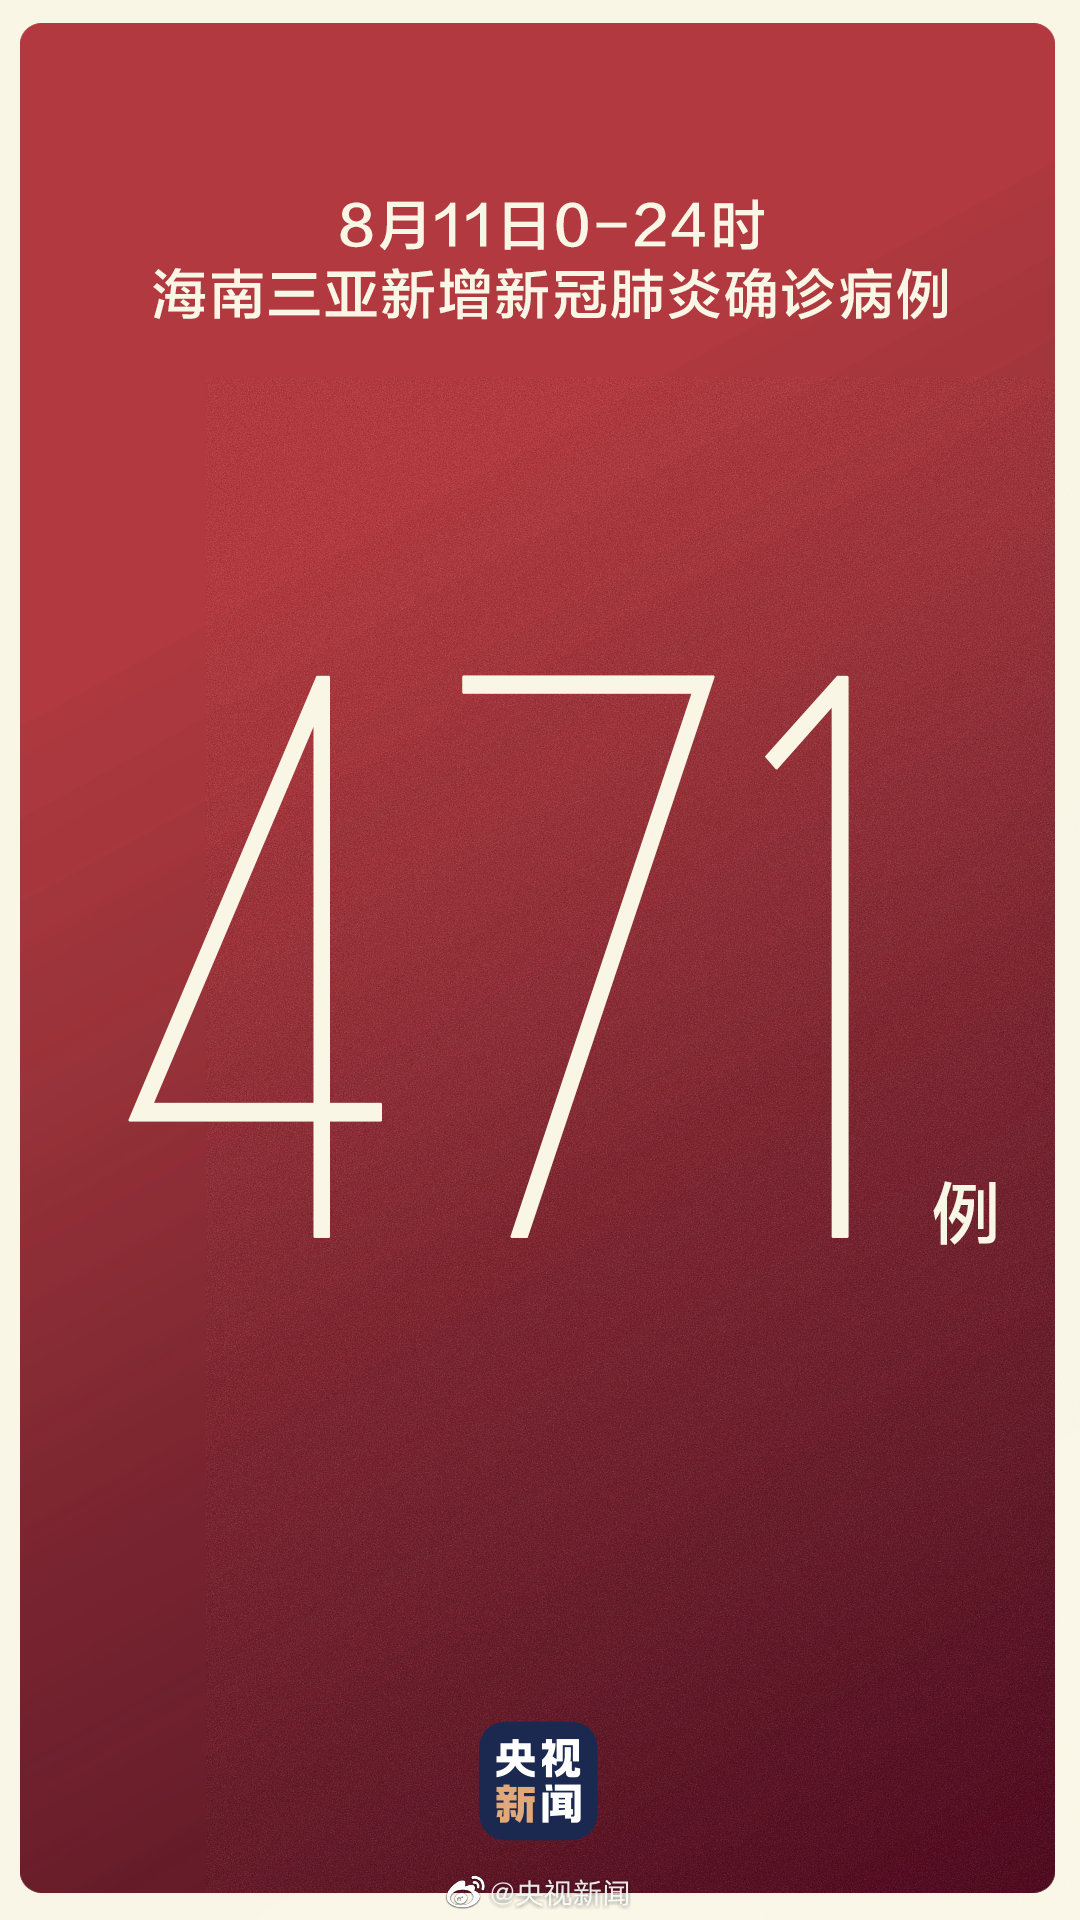 2016雅丽洁美业三亚峰会-新品发布-广州志烨广告有限公司官方网站